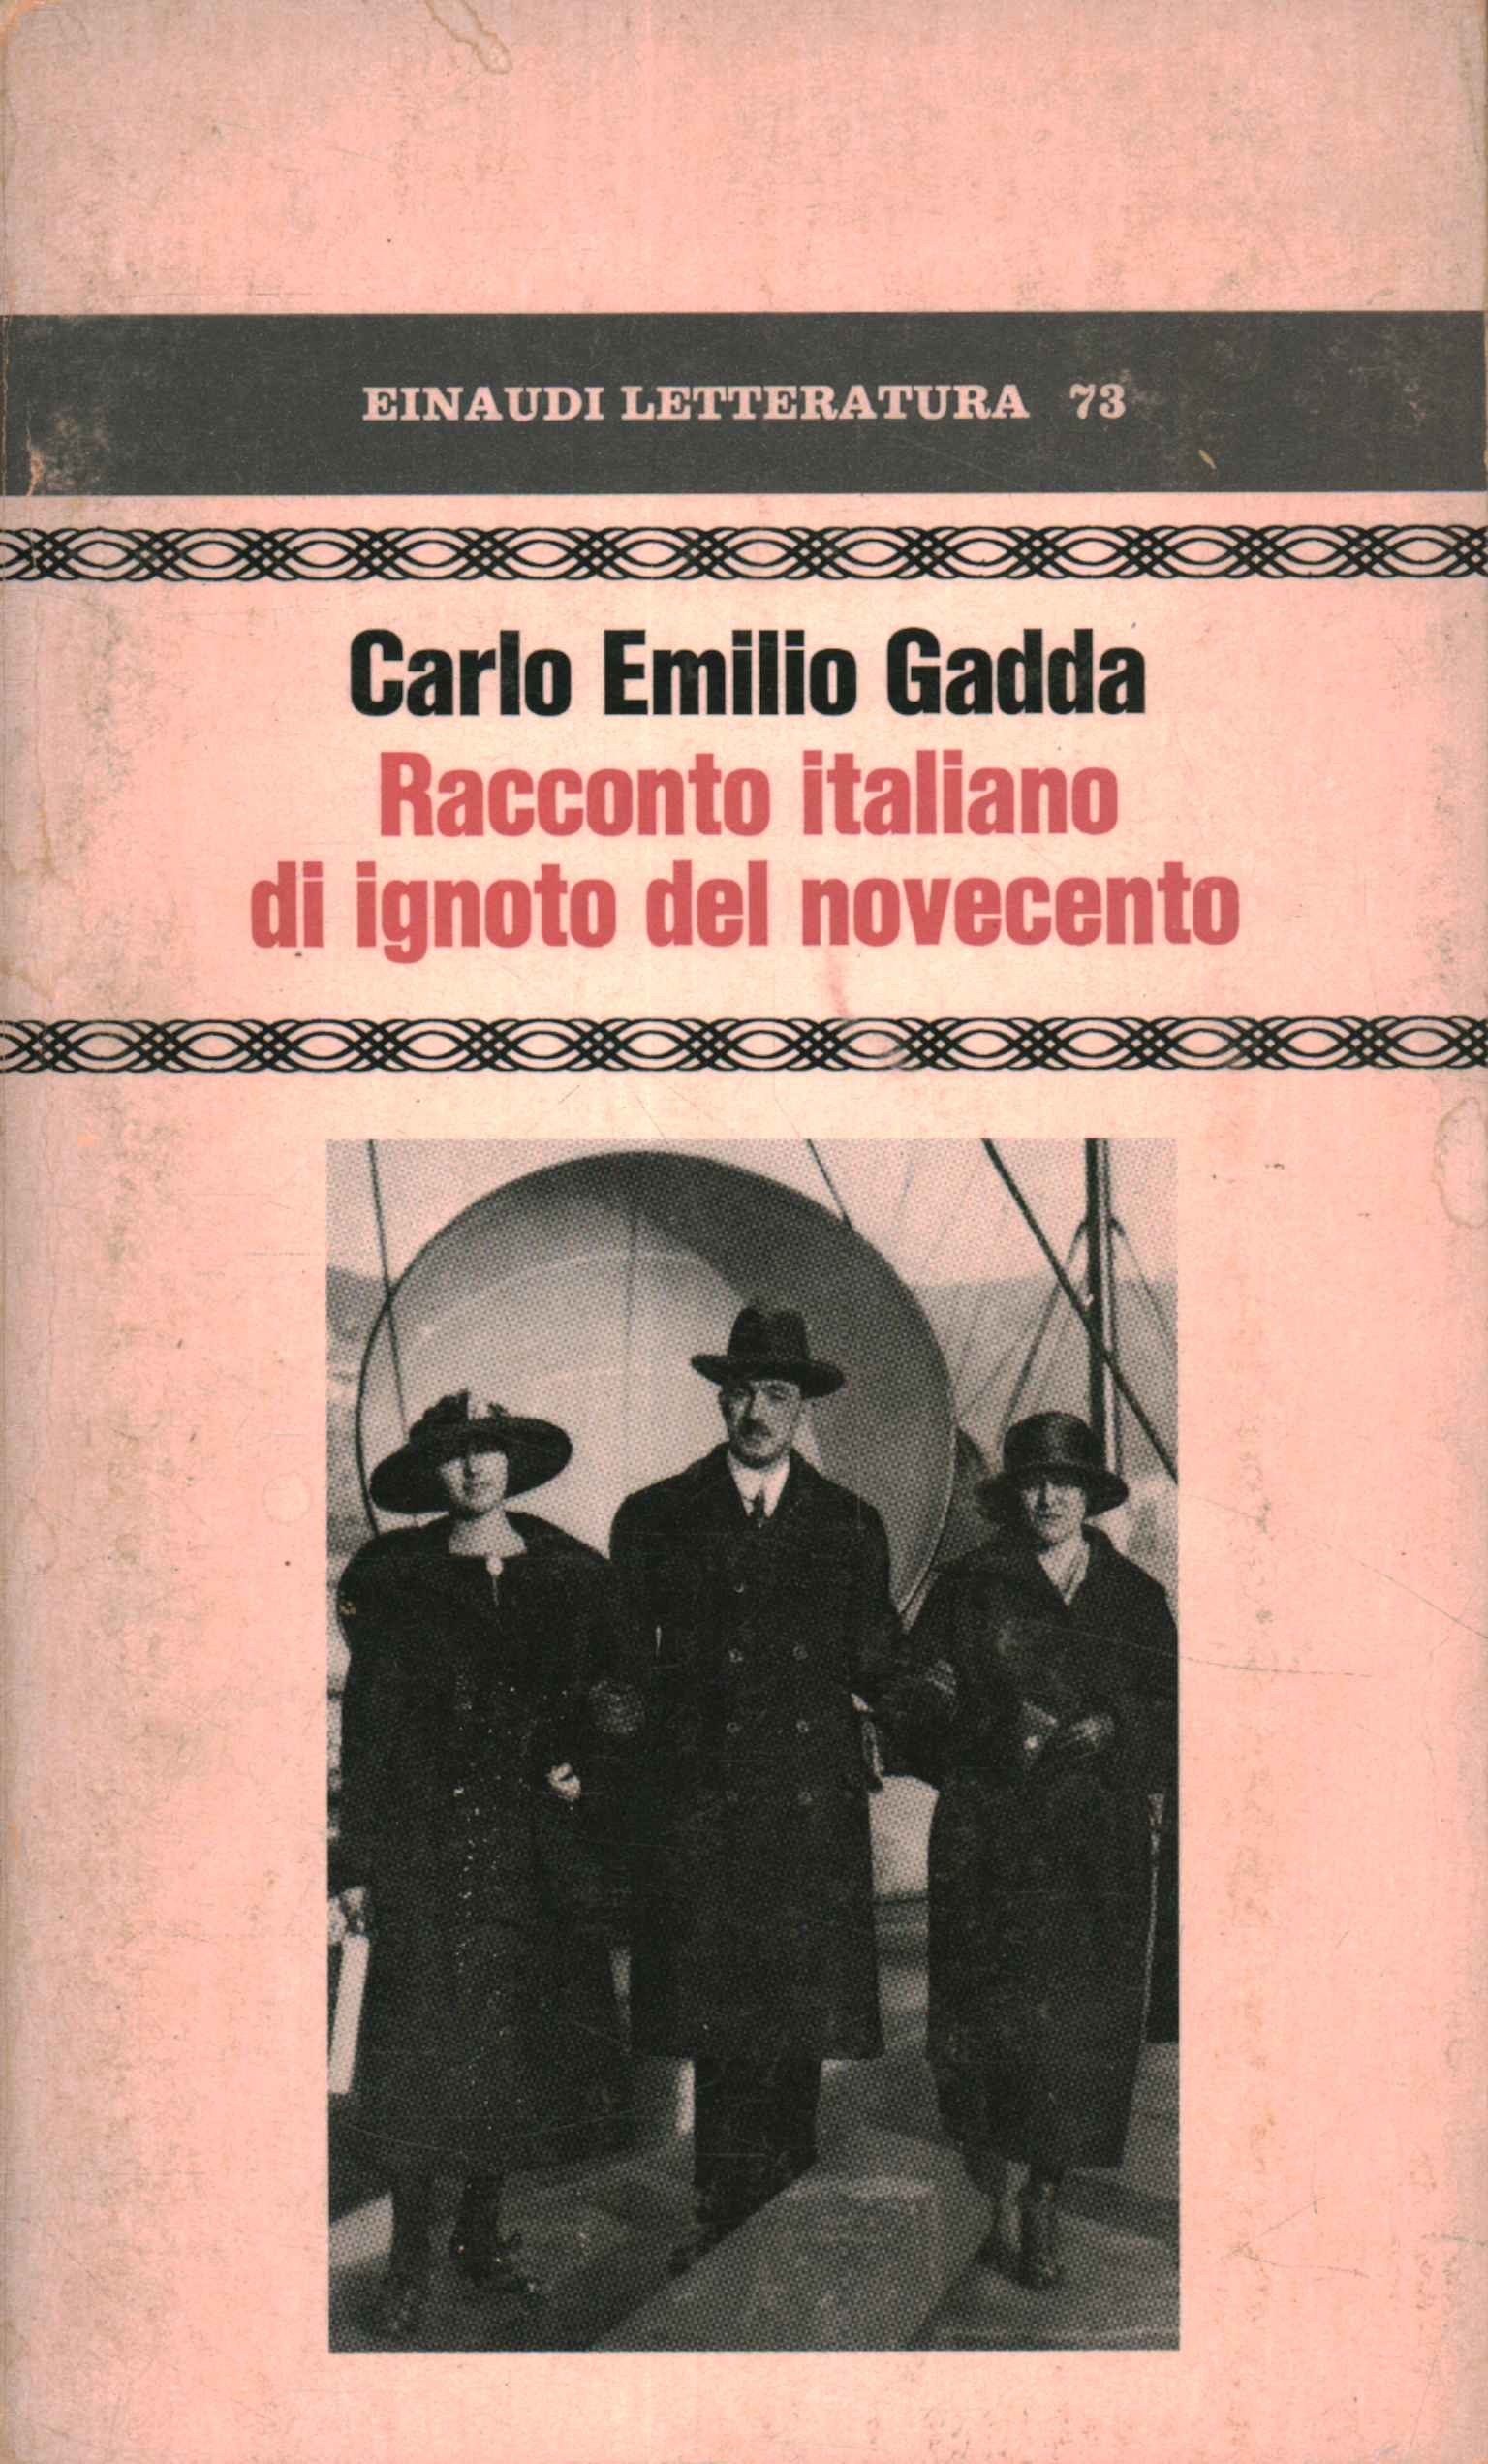 Italienische Geschichte eines unbekannten Mannes aus dem 20. Jahrhundert